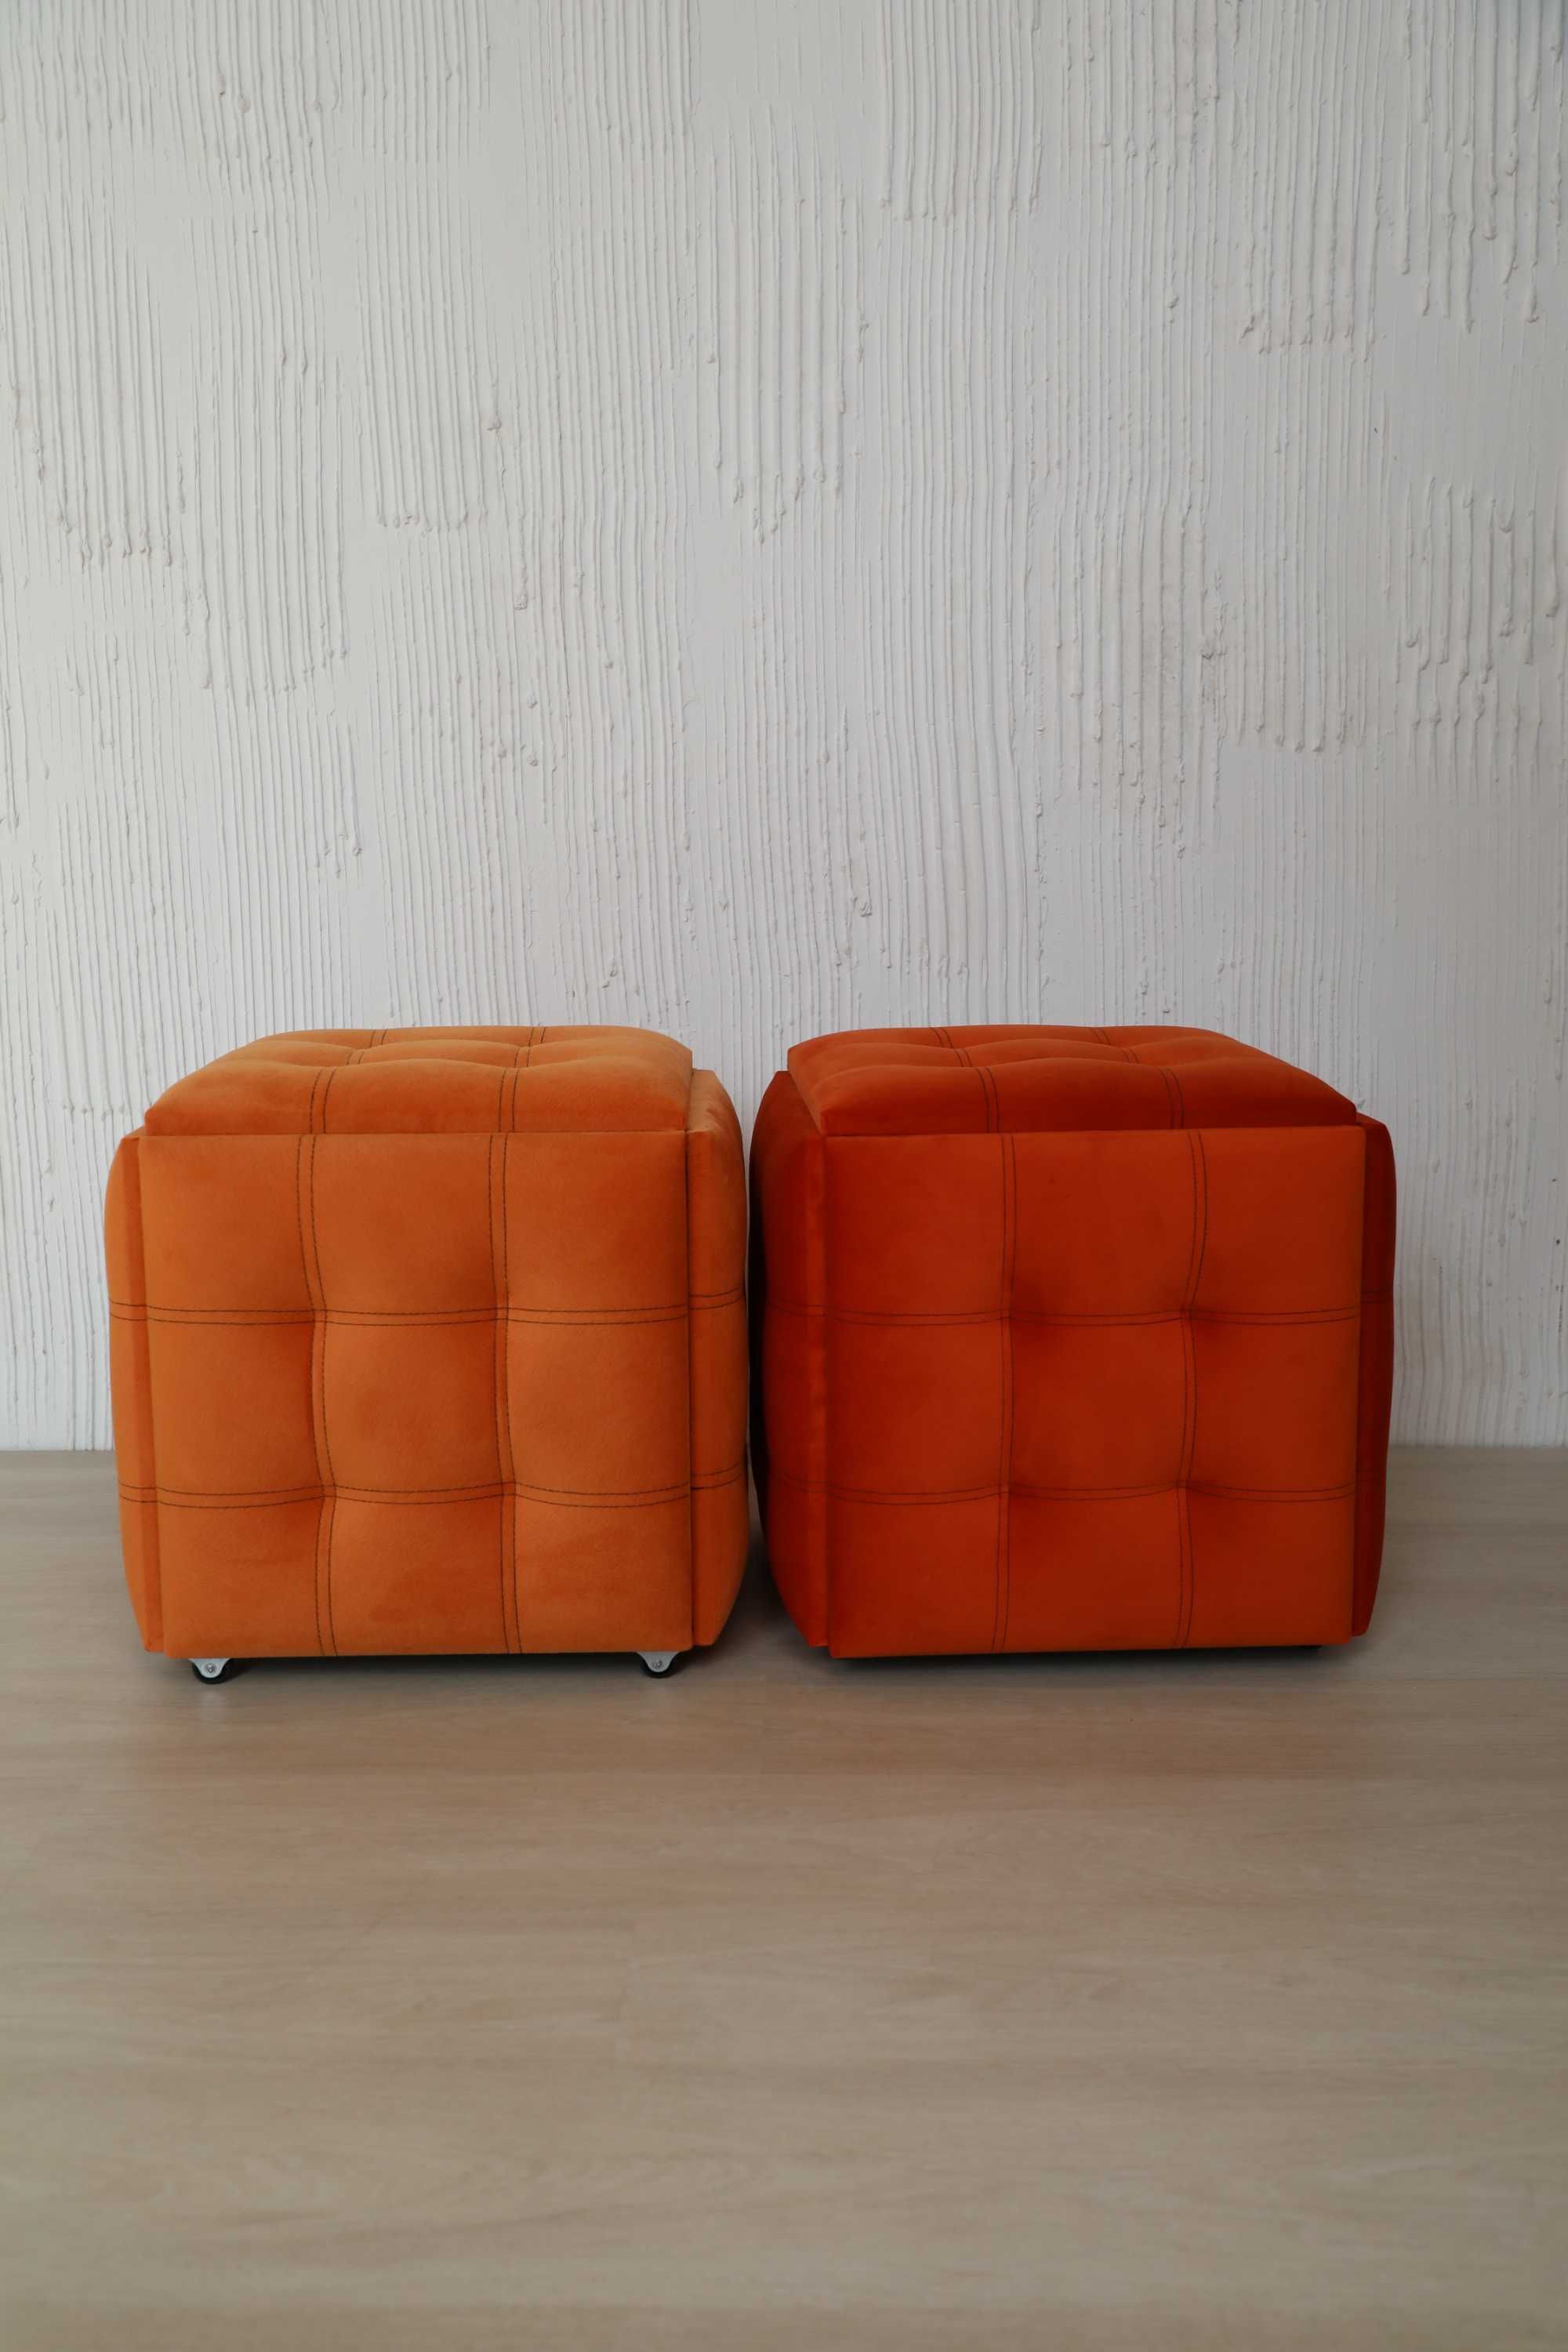 Пуфик-трансформер 5 в 1. Оранжевий пуф. Стіл, столик, крісло, стульчик